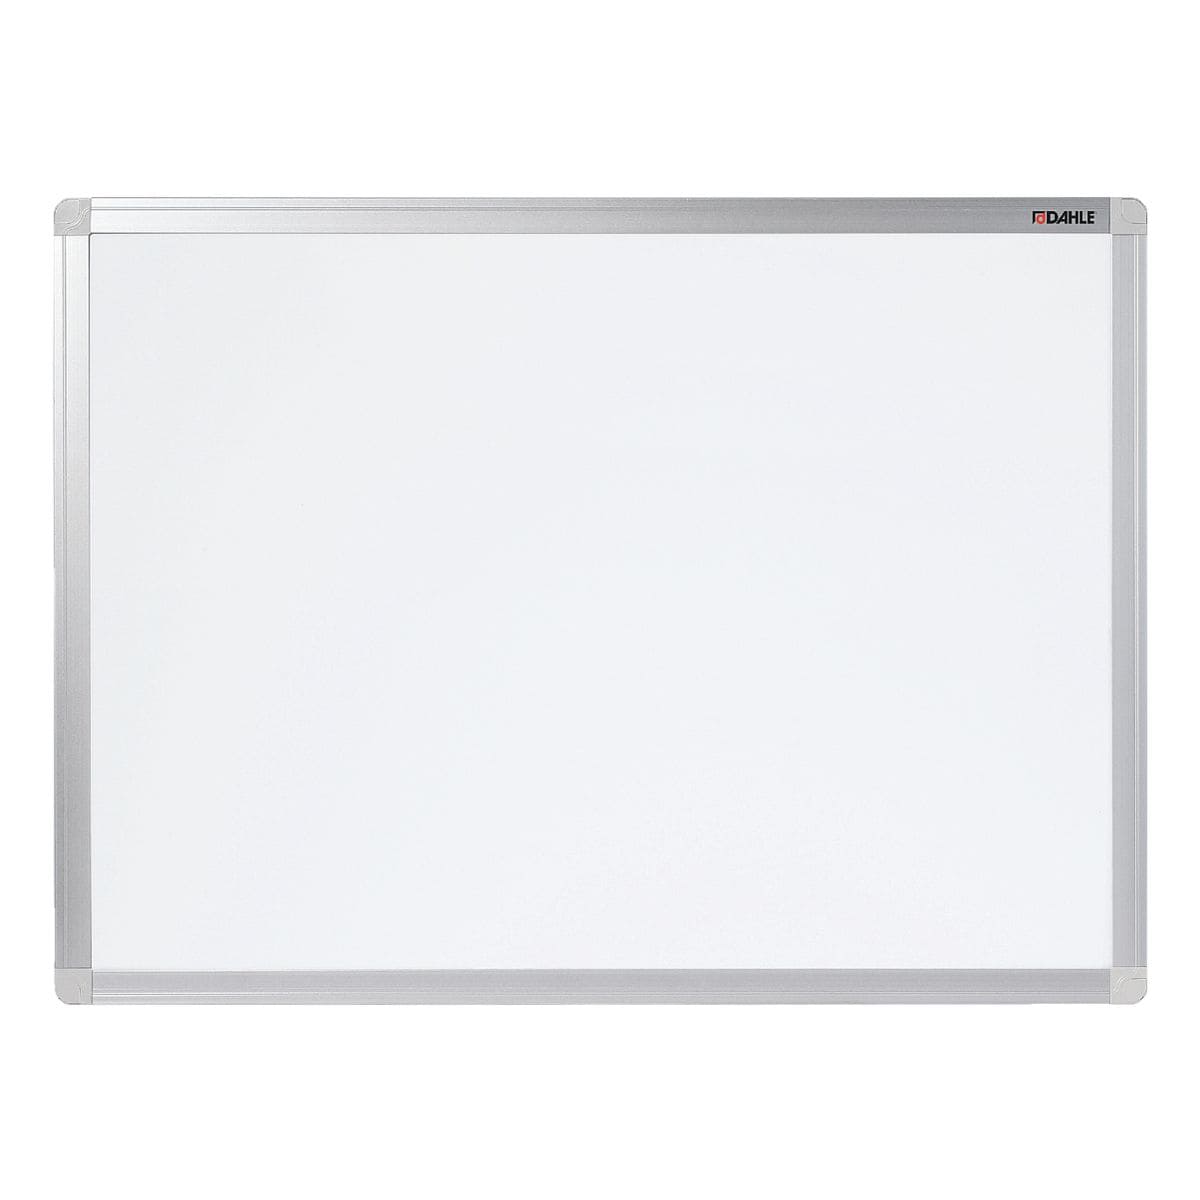 Dahle Whiteboard Basic Board lackiert, 90x60 cm